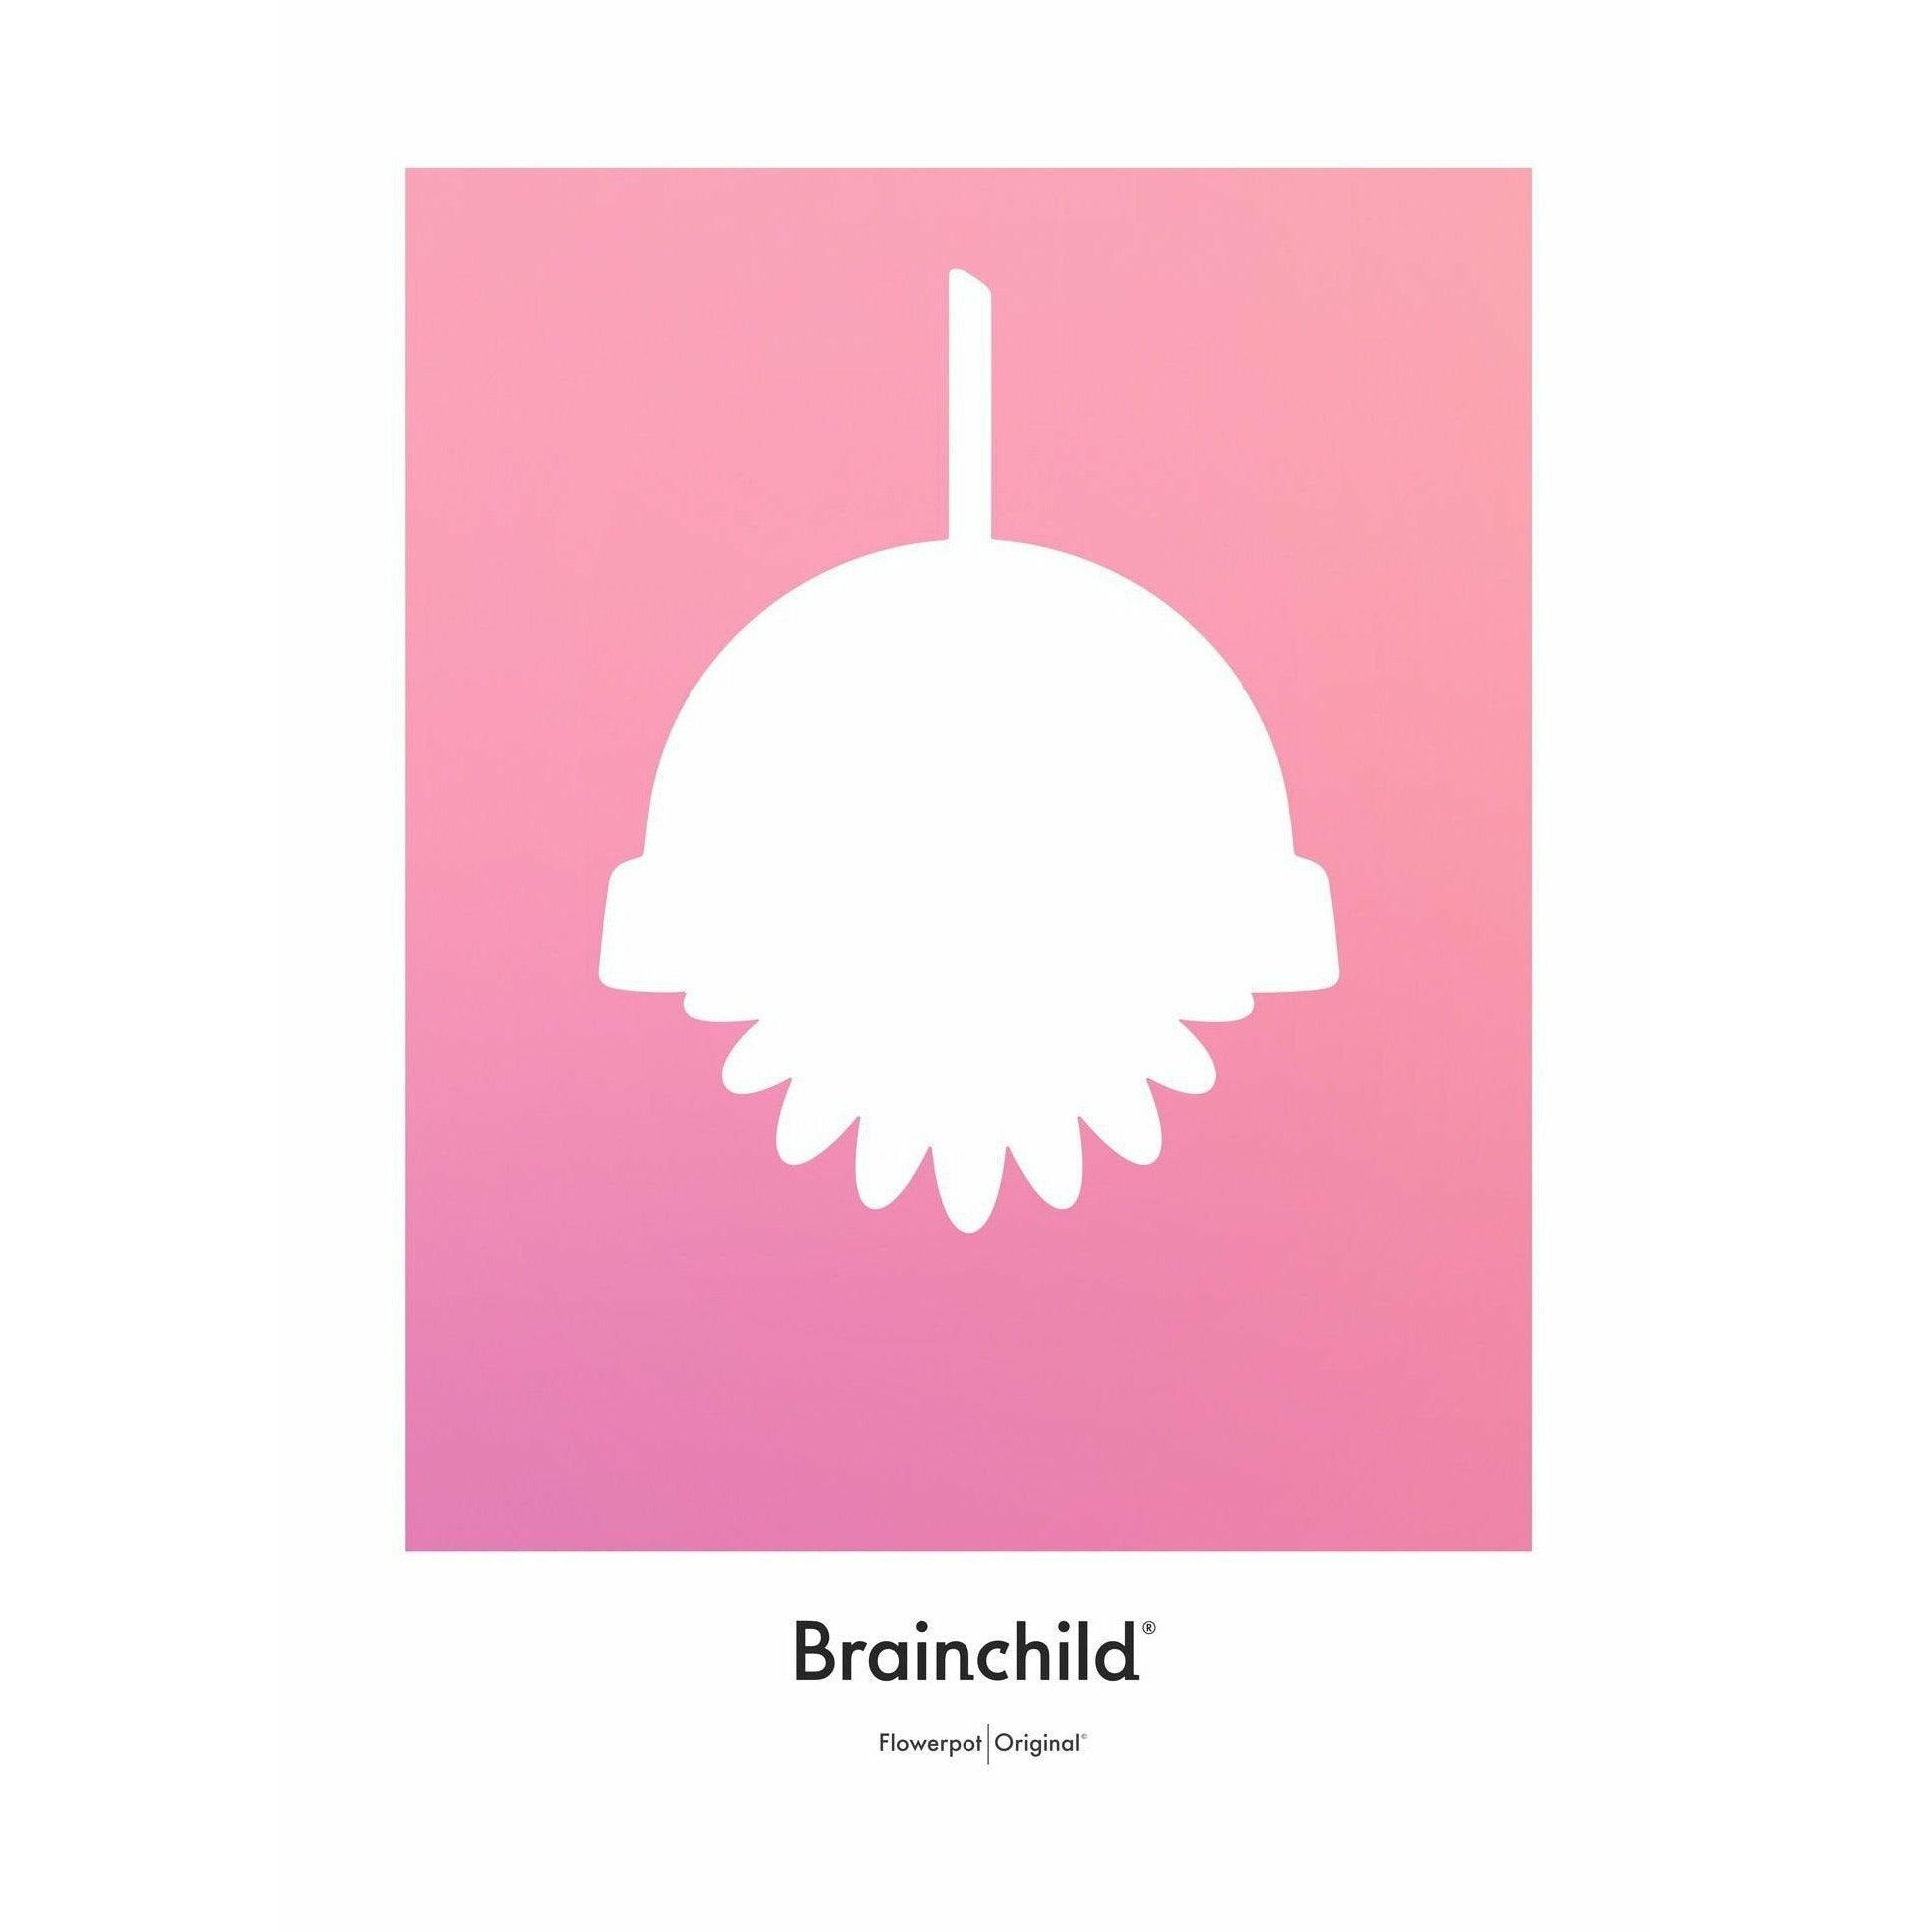 Plakát pro design Brainchild Flowerpot Design bez rámu 70 x100 cm, růžový